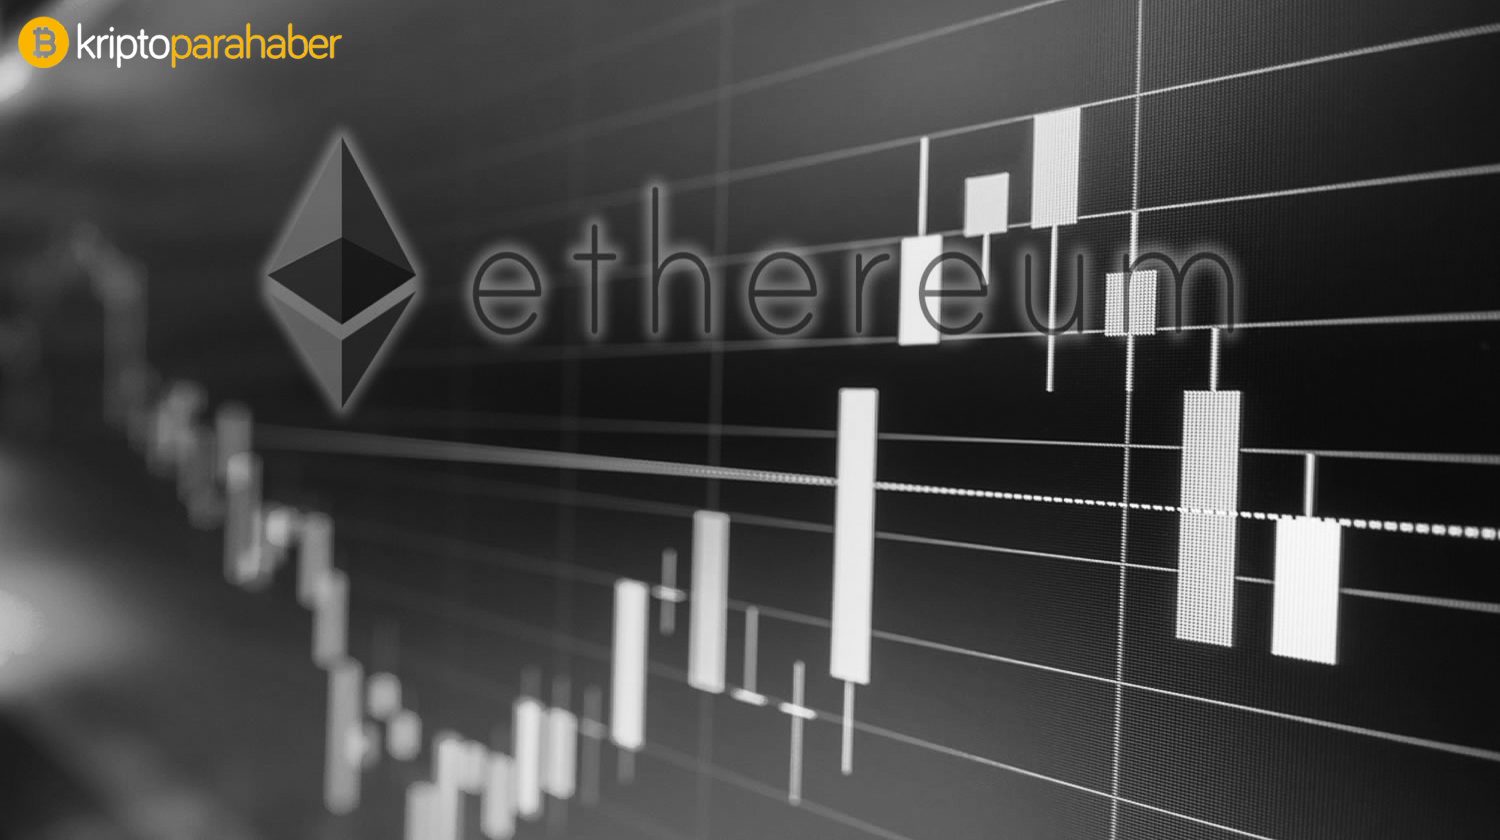 22 Ocak Ethereum analizi: ETH fiyatı nereye gidiyor?